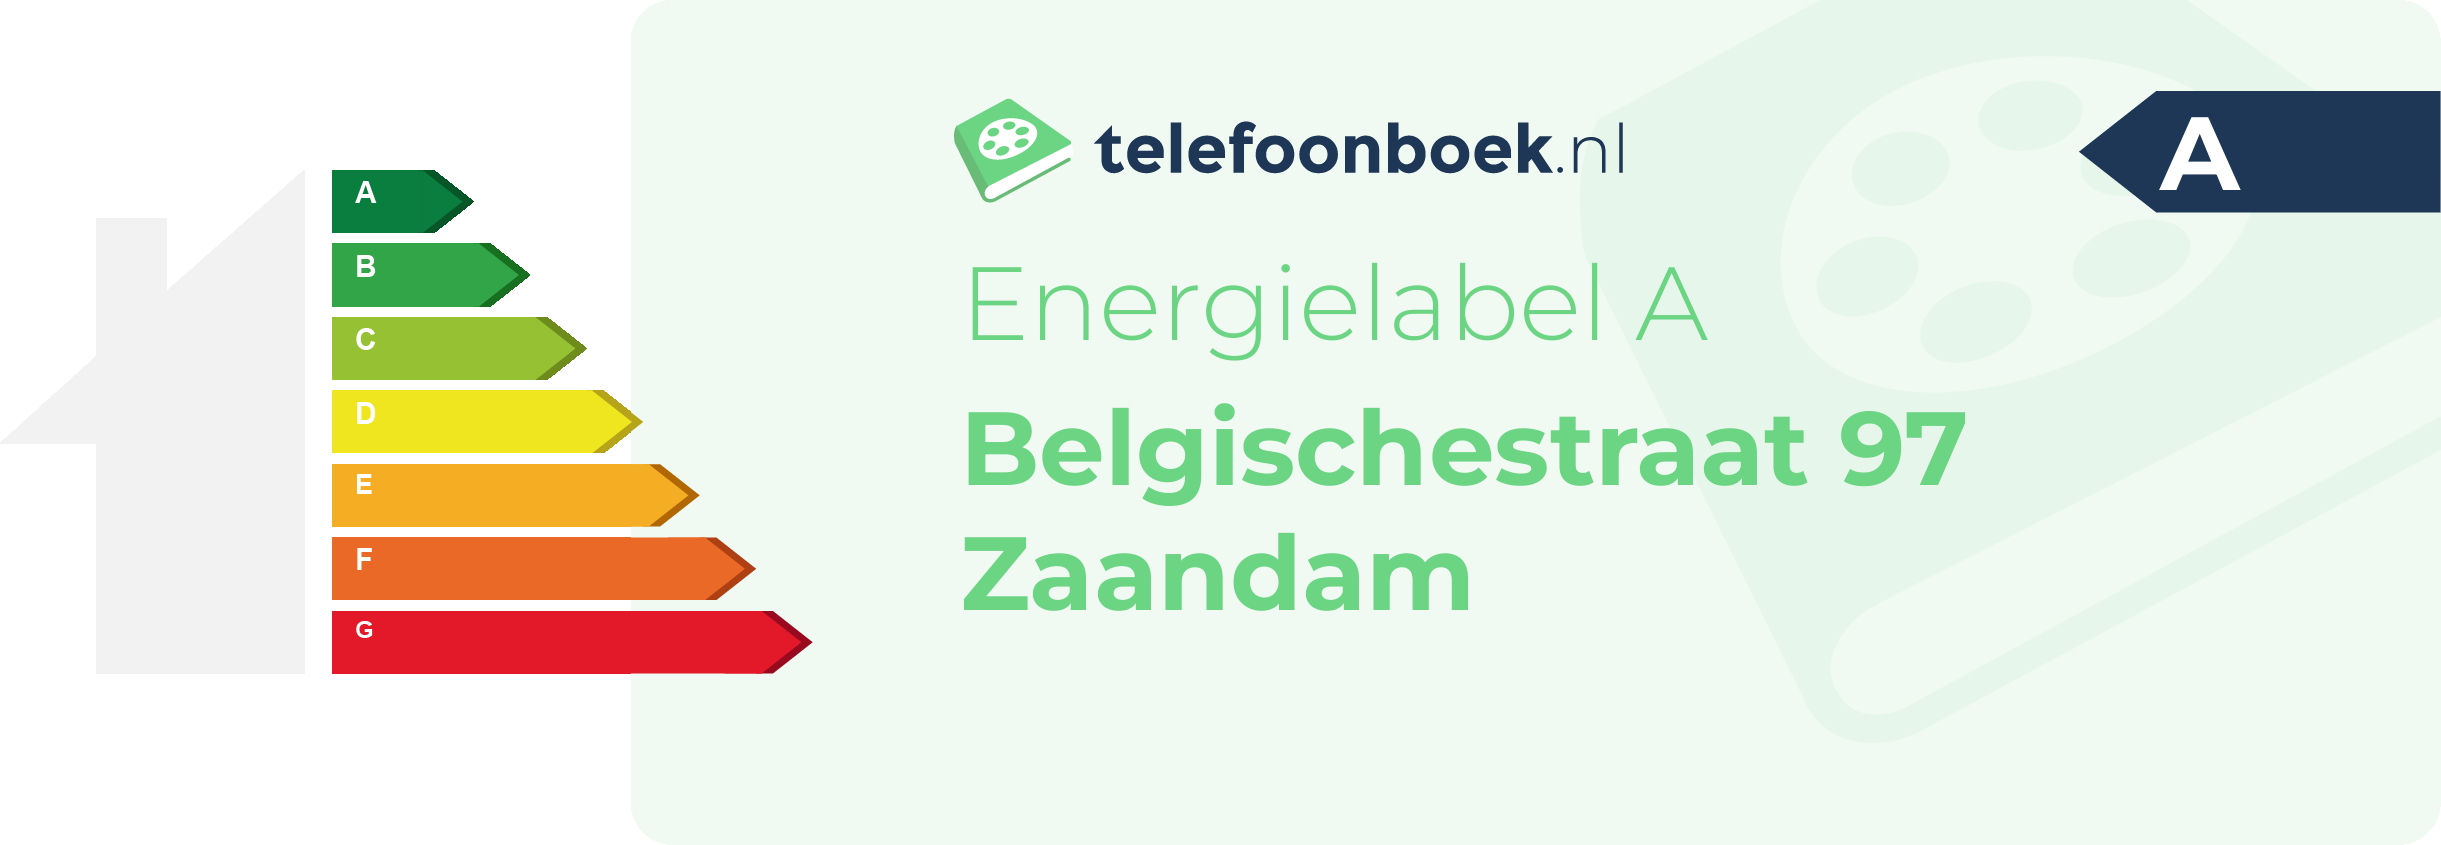 Energielabel Belgischestraat 97 Zaandam